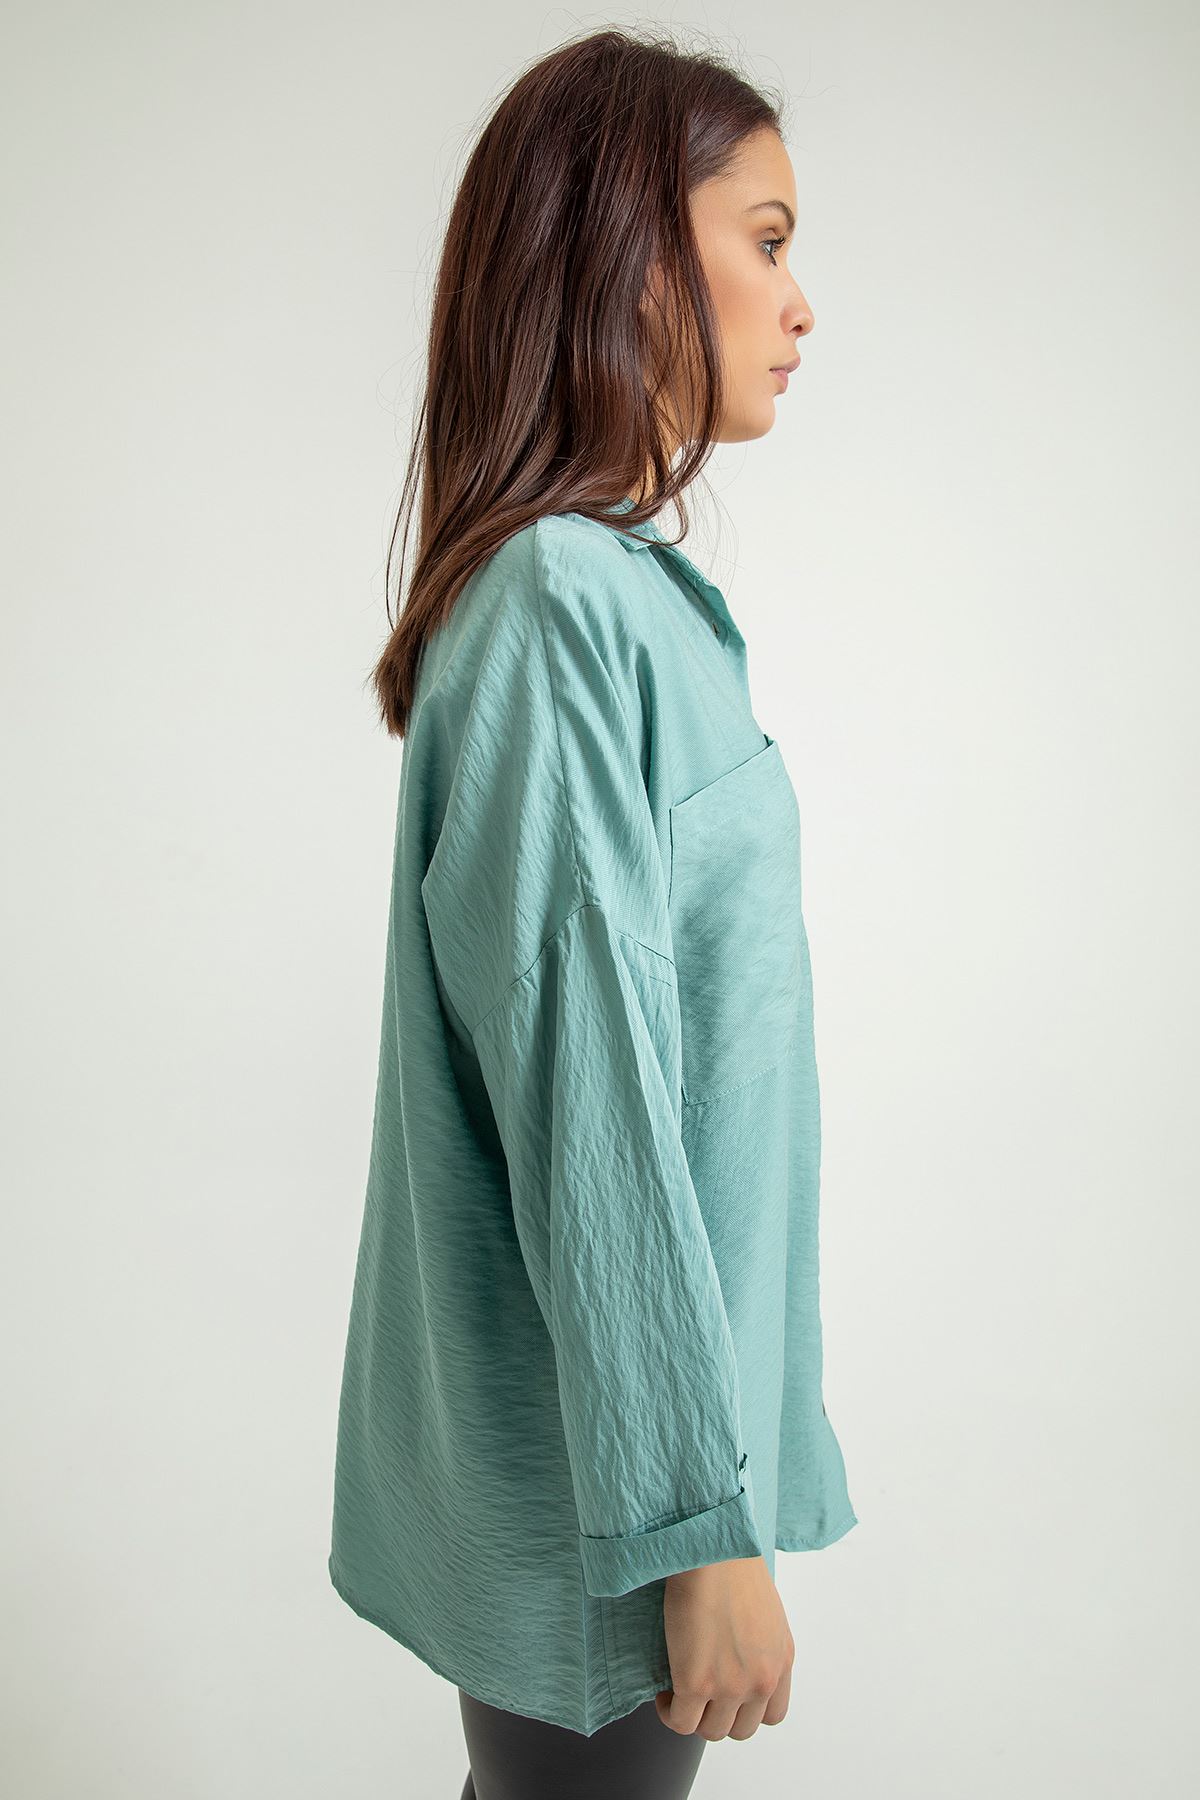 Aerobin Fabric Long Sleeve Shirt Collar Below Hip Oversize Women'S Shirt - Mint